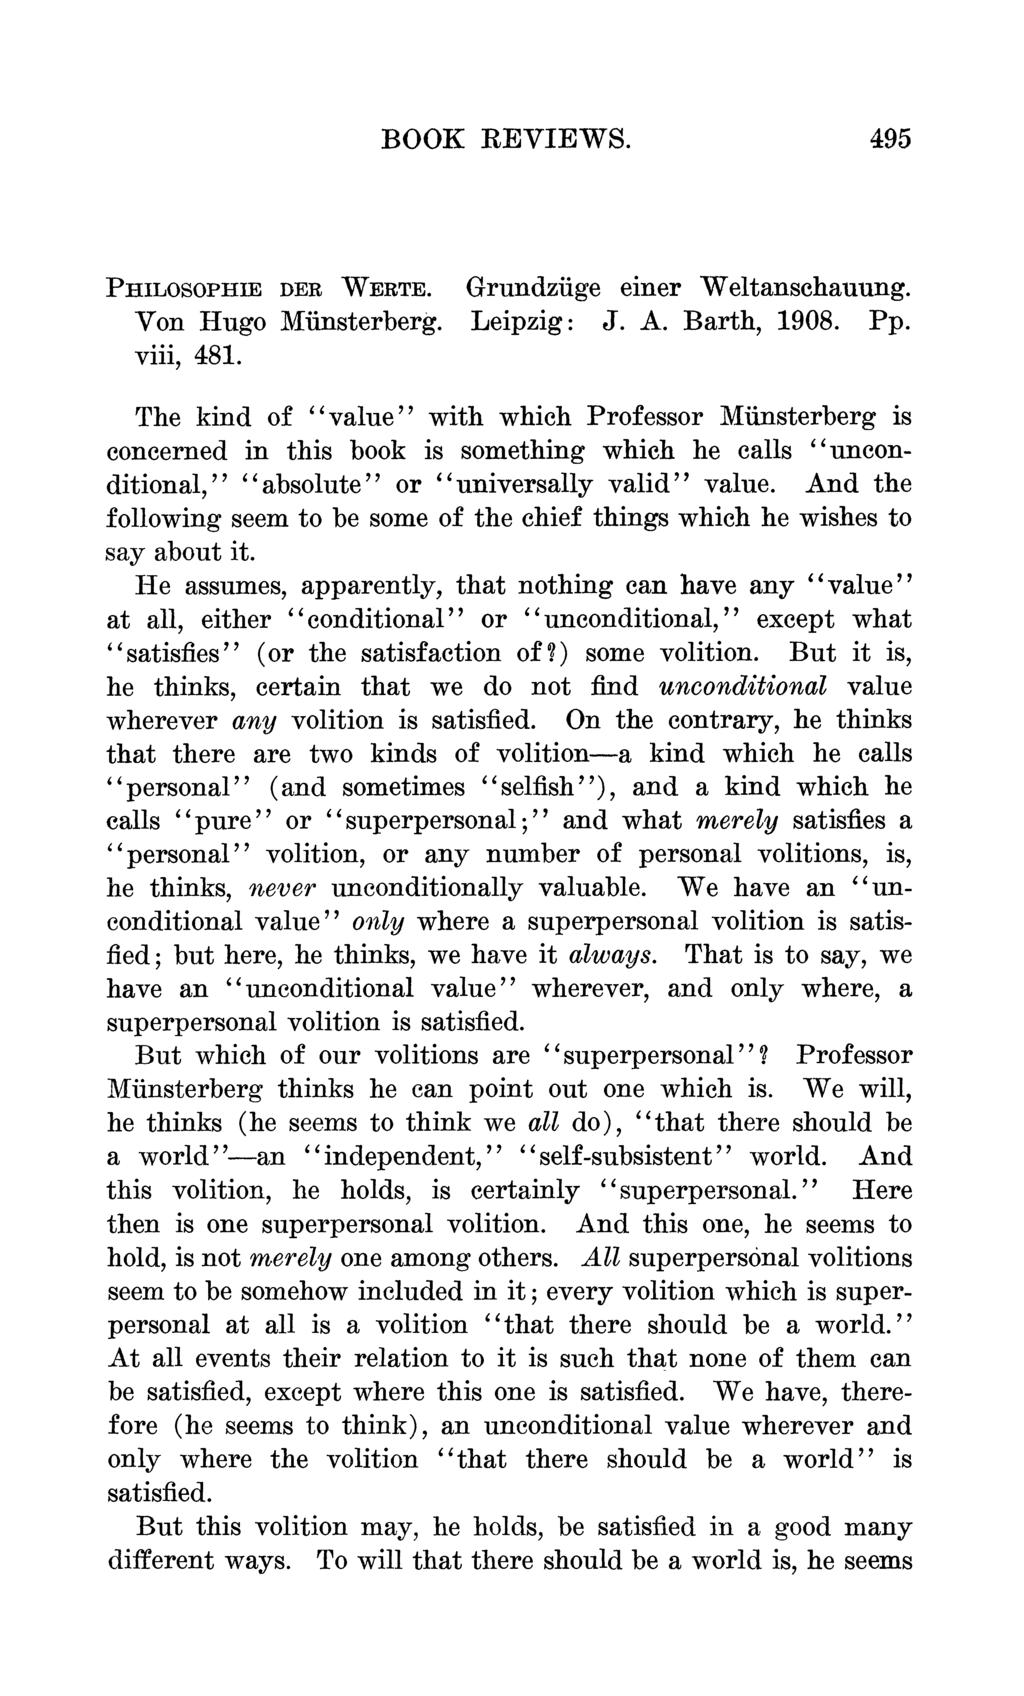 BOOK REVIEWS. 495 PHILOSOPHIE DER WERTE. Grundziige einer Weltanschauung. Von Hugo Minsterberg. Leipzig: J. A. Barth, 1908. Pp. viii, 481.